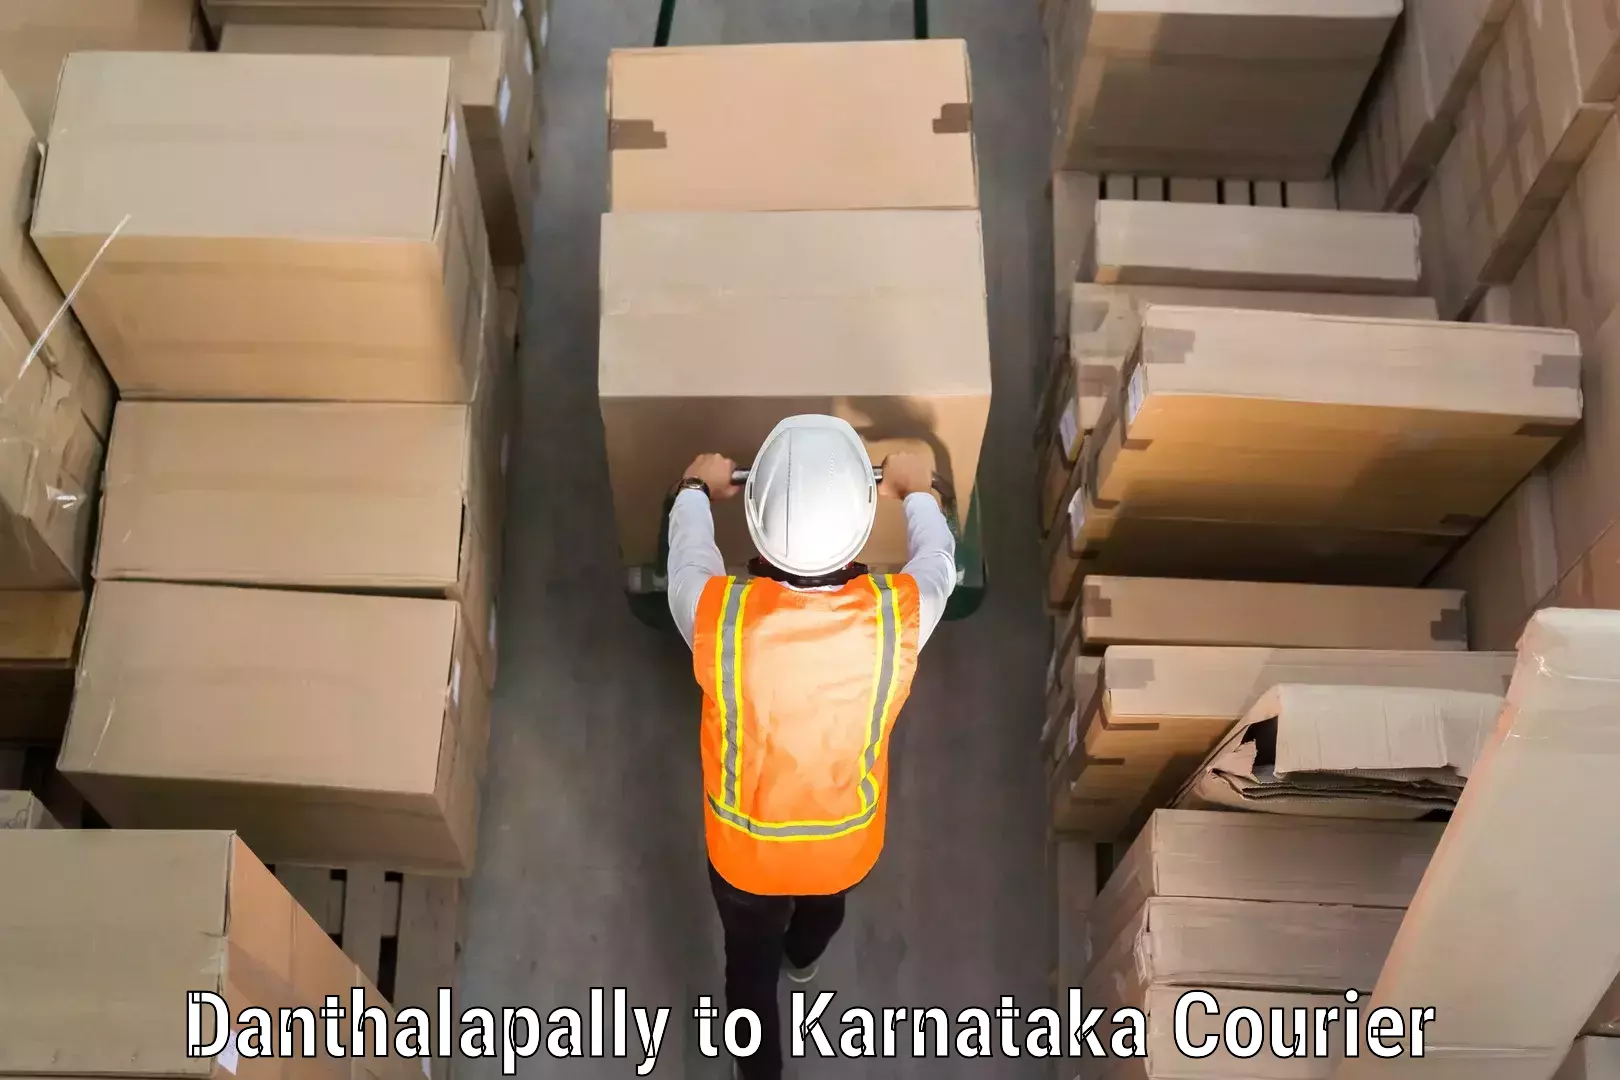 Baggage transport network Danthalapally to Karnataka